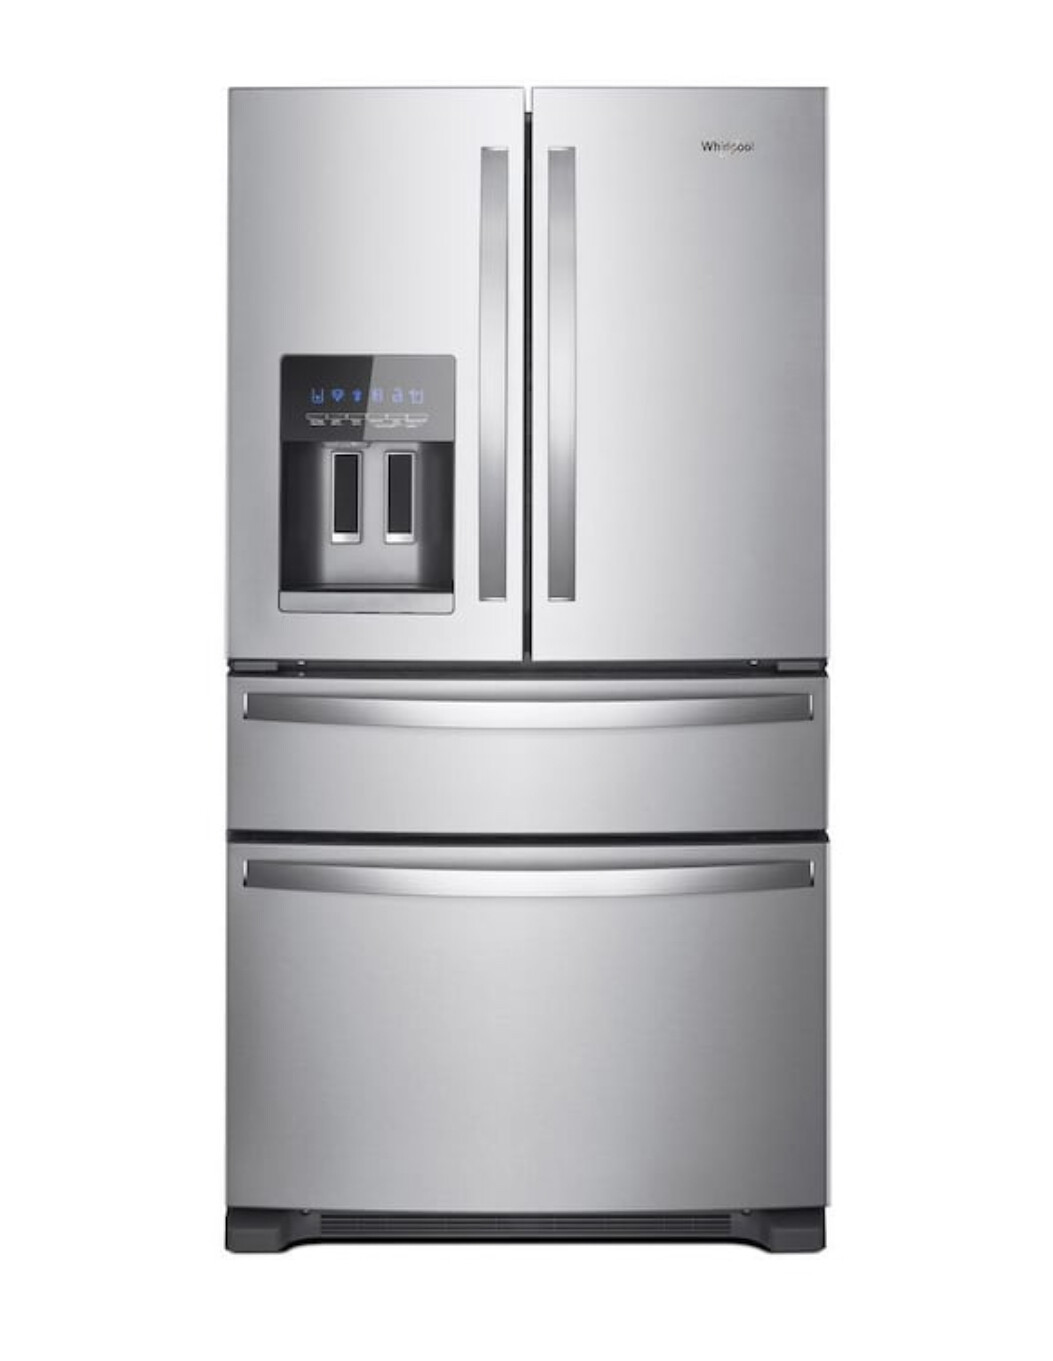 Whirlpool 24.5 Cu Ft 4-Door French-Door Refrigerator with Ice Maker MSRP $2999 WRX735SDHZ (porder)